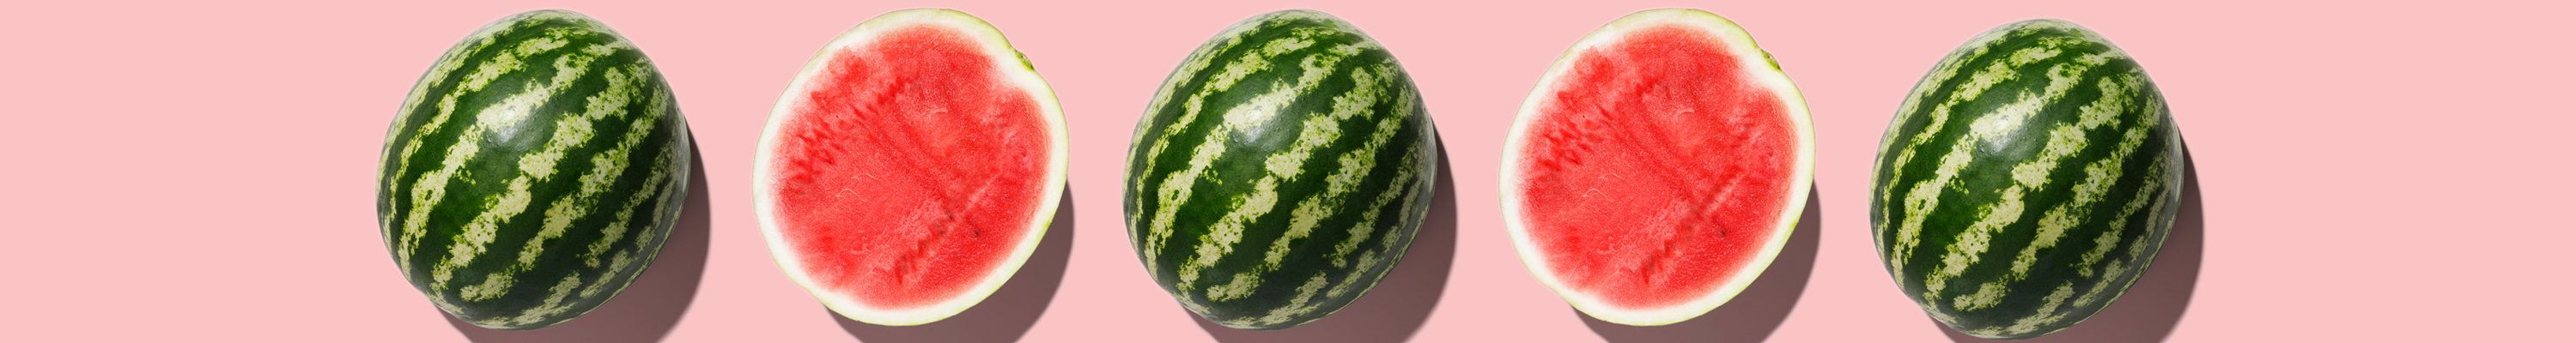 Ayco Watermelon